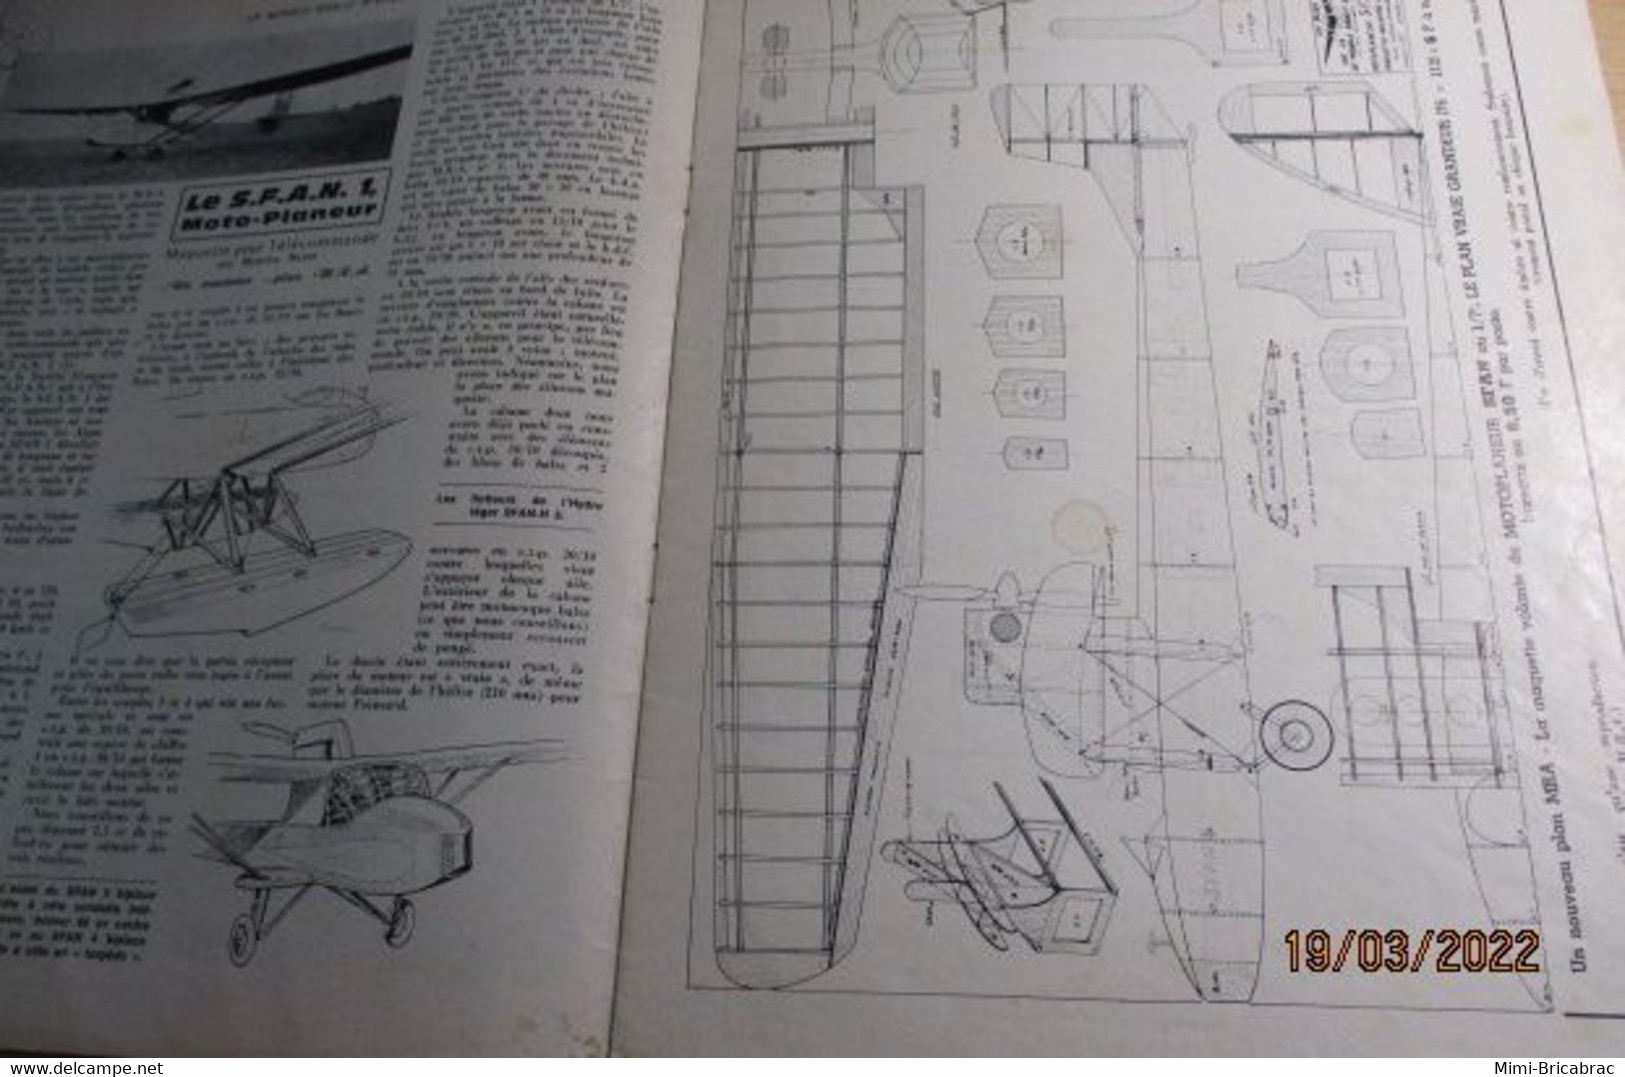 22-A 1e Revue De Maquettisme Années 50/60 : LE MODELE REDUIT D'AVION Avec Plan Inclus N°361 De Juin 1969 - Aerei E Elicotteri